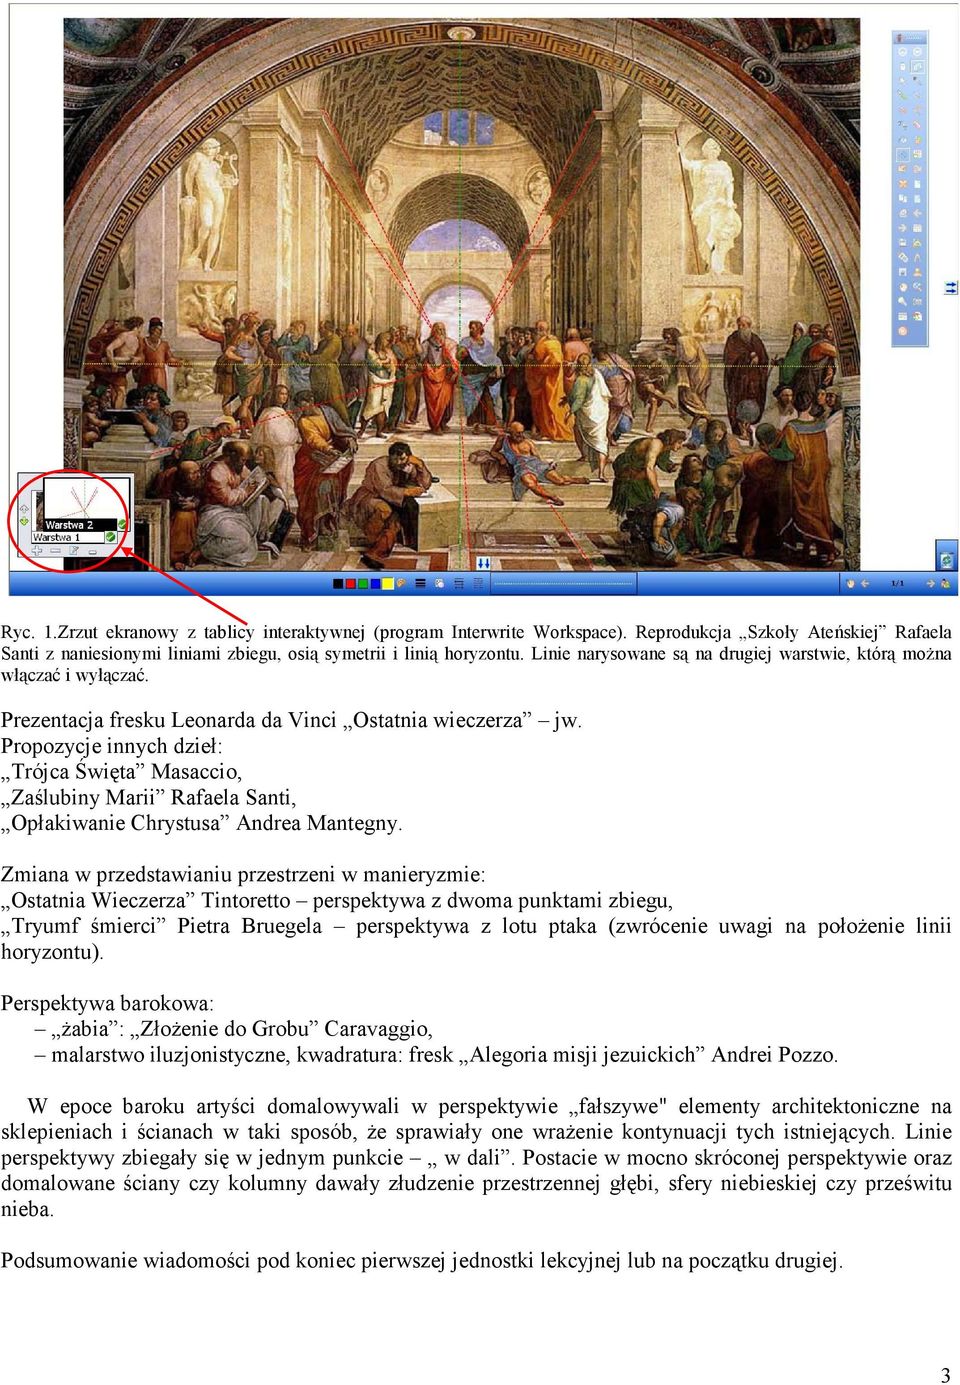 Propozycje innych dzieł: Trójca Święta Masaccio, Zaślubiny Marii Rafaela Santi, Opłakiwanie Chrystusa Andrea Mantegny.